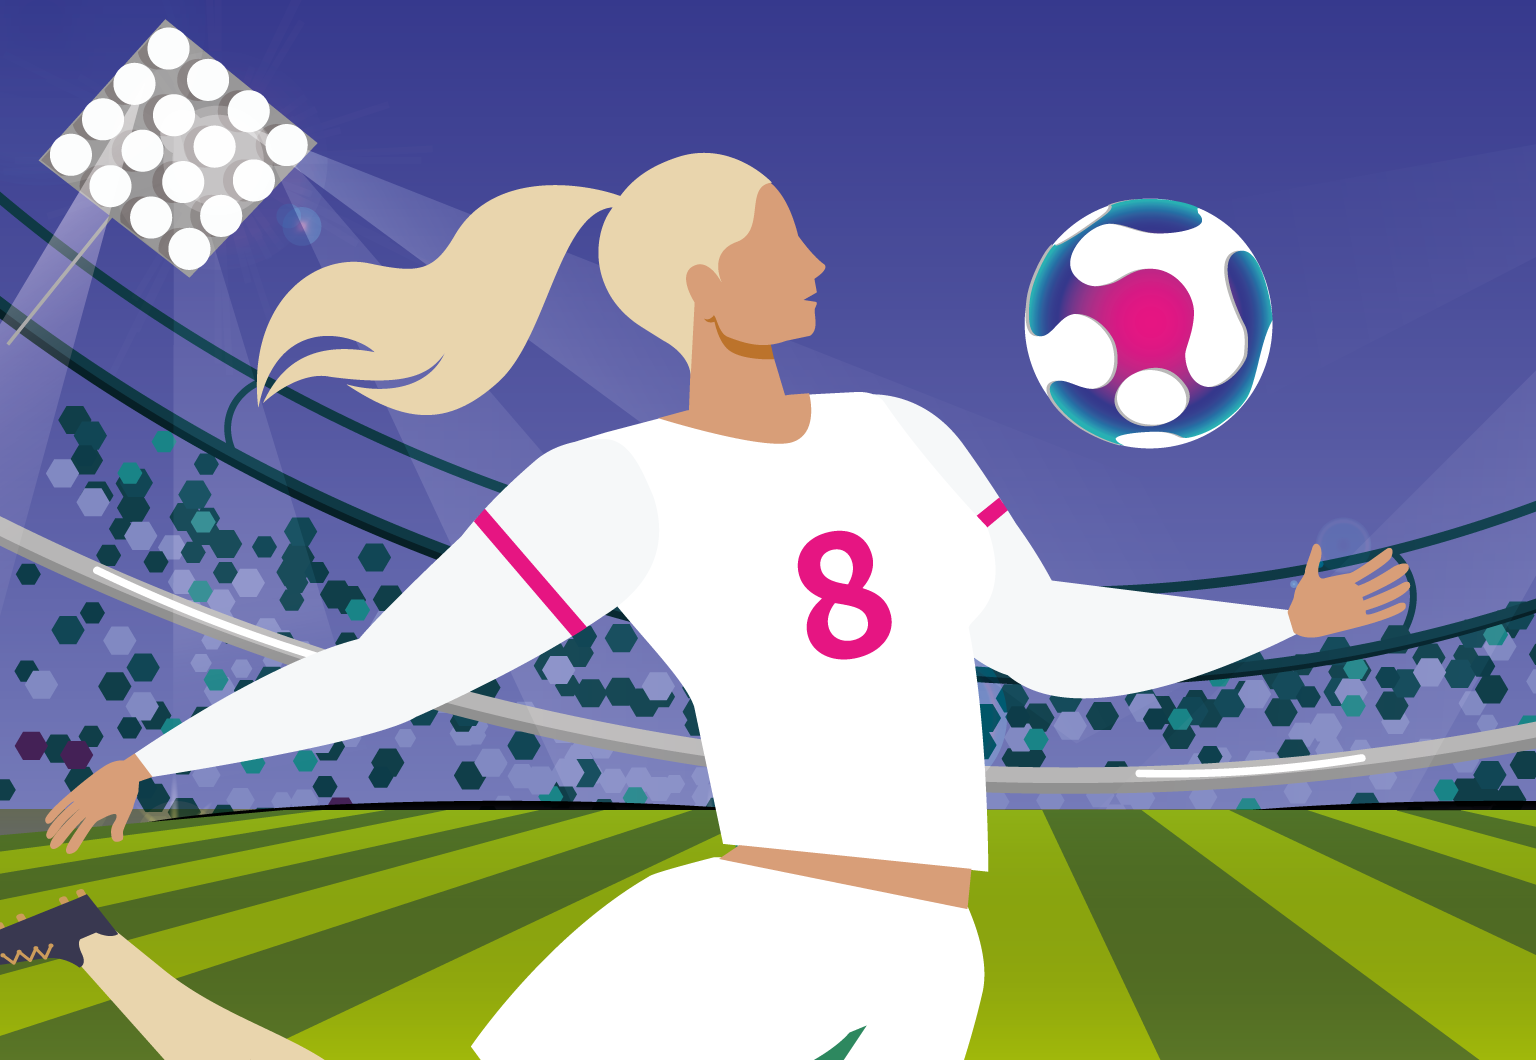  Bei der Fußball-Europameisterschaft der Frauen kannst du 15 $ gewinnen